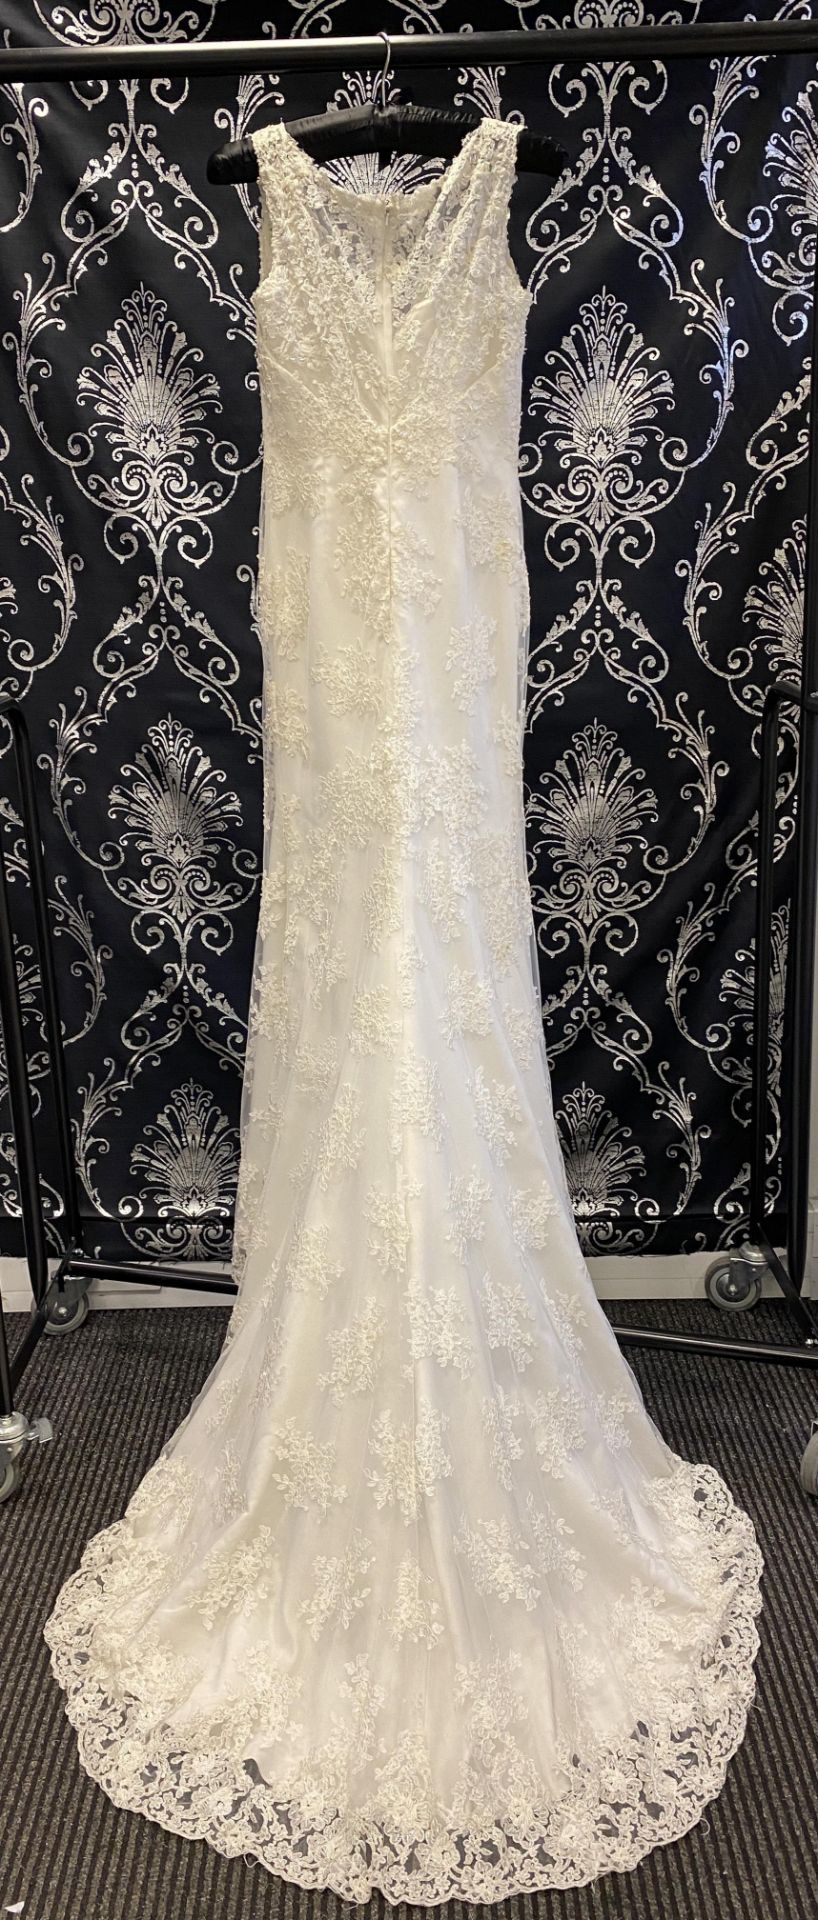 1 x LUSAN MANDONGUS 'Seychelle' Lace Overlay Biased Cut Designer Wedding Dress RRP £1,500 UK10 - Image 2 of 9